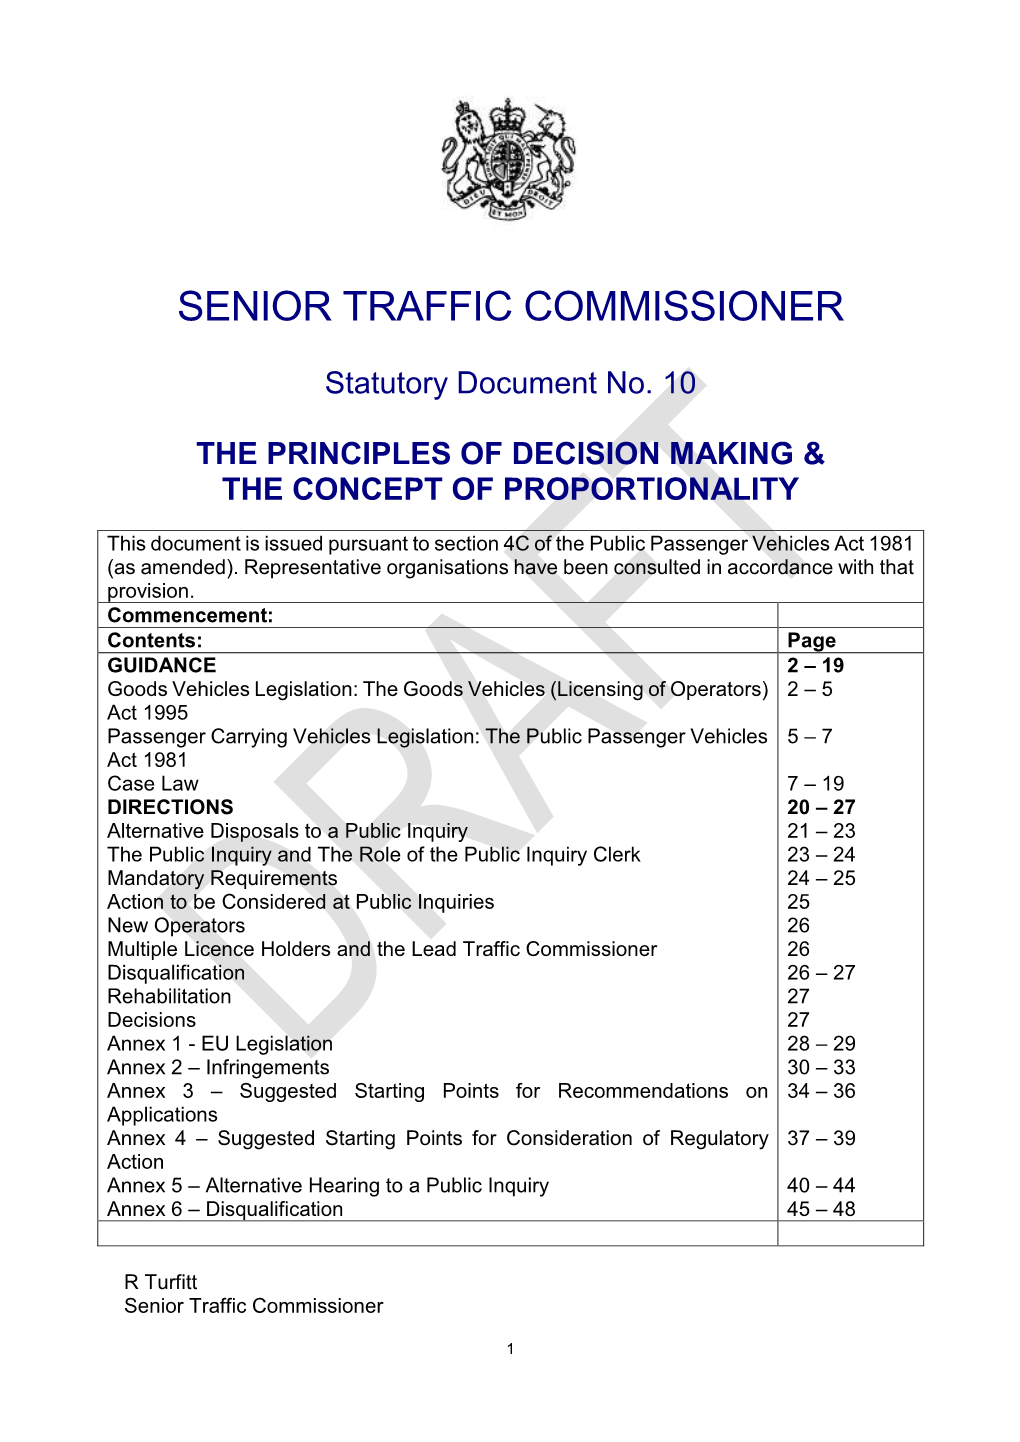 Senior Traffic Commissioner